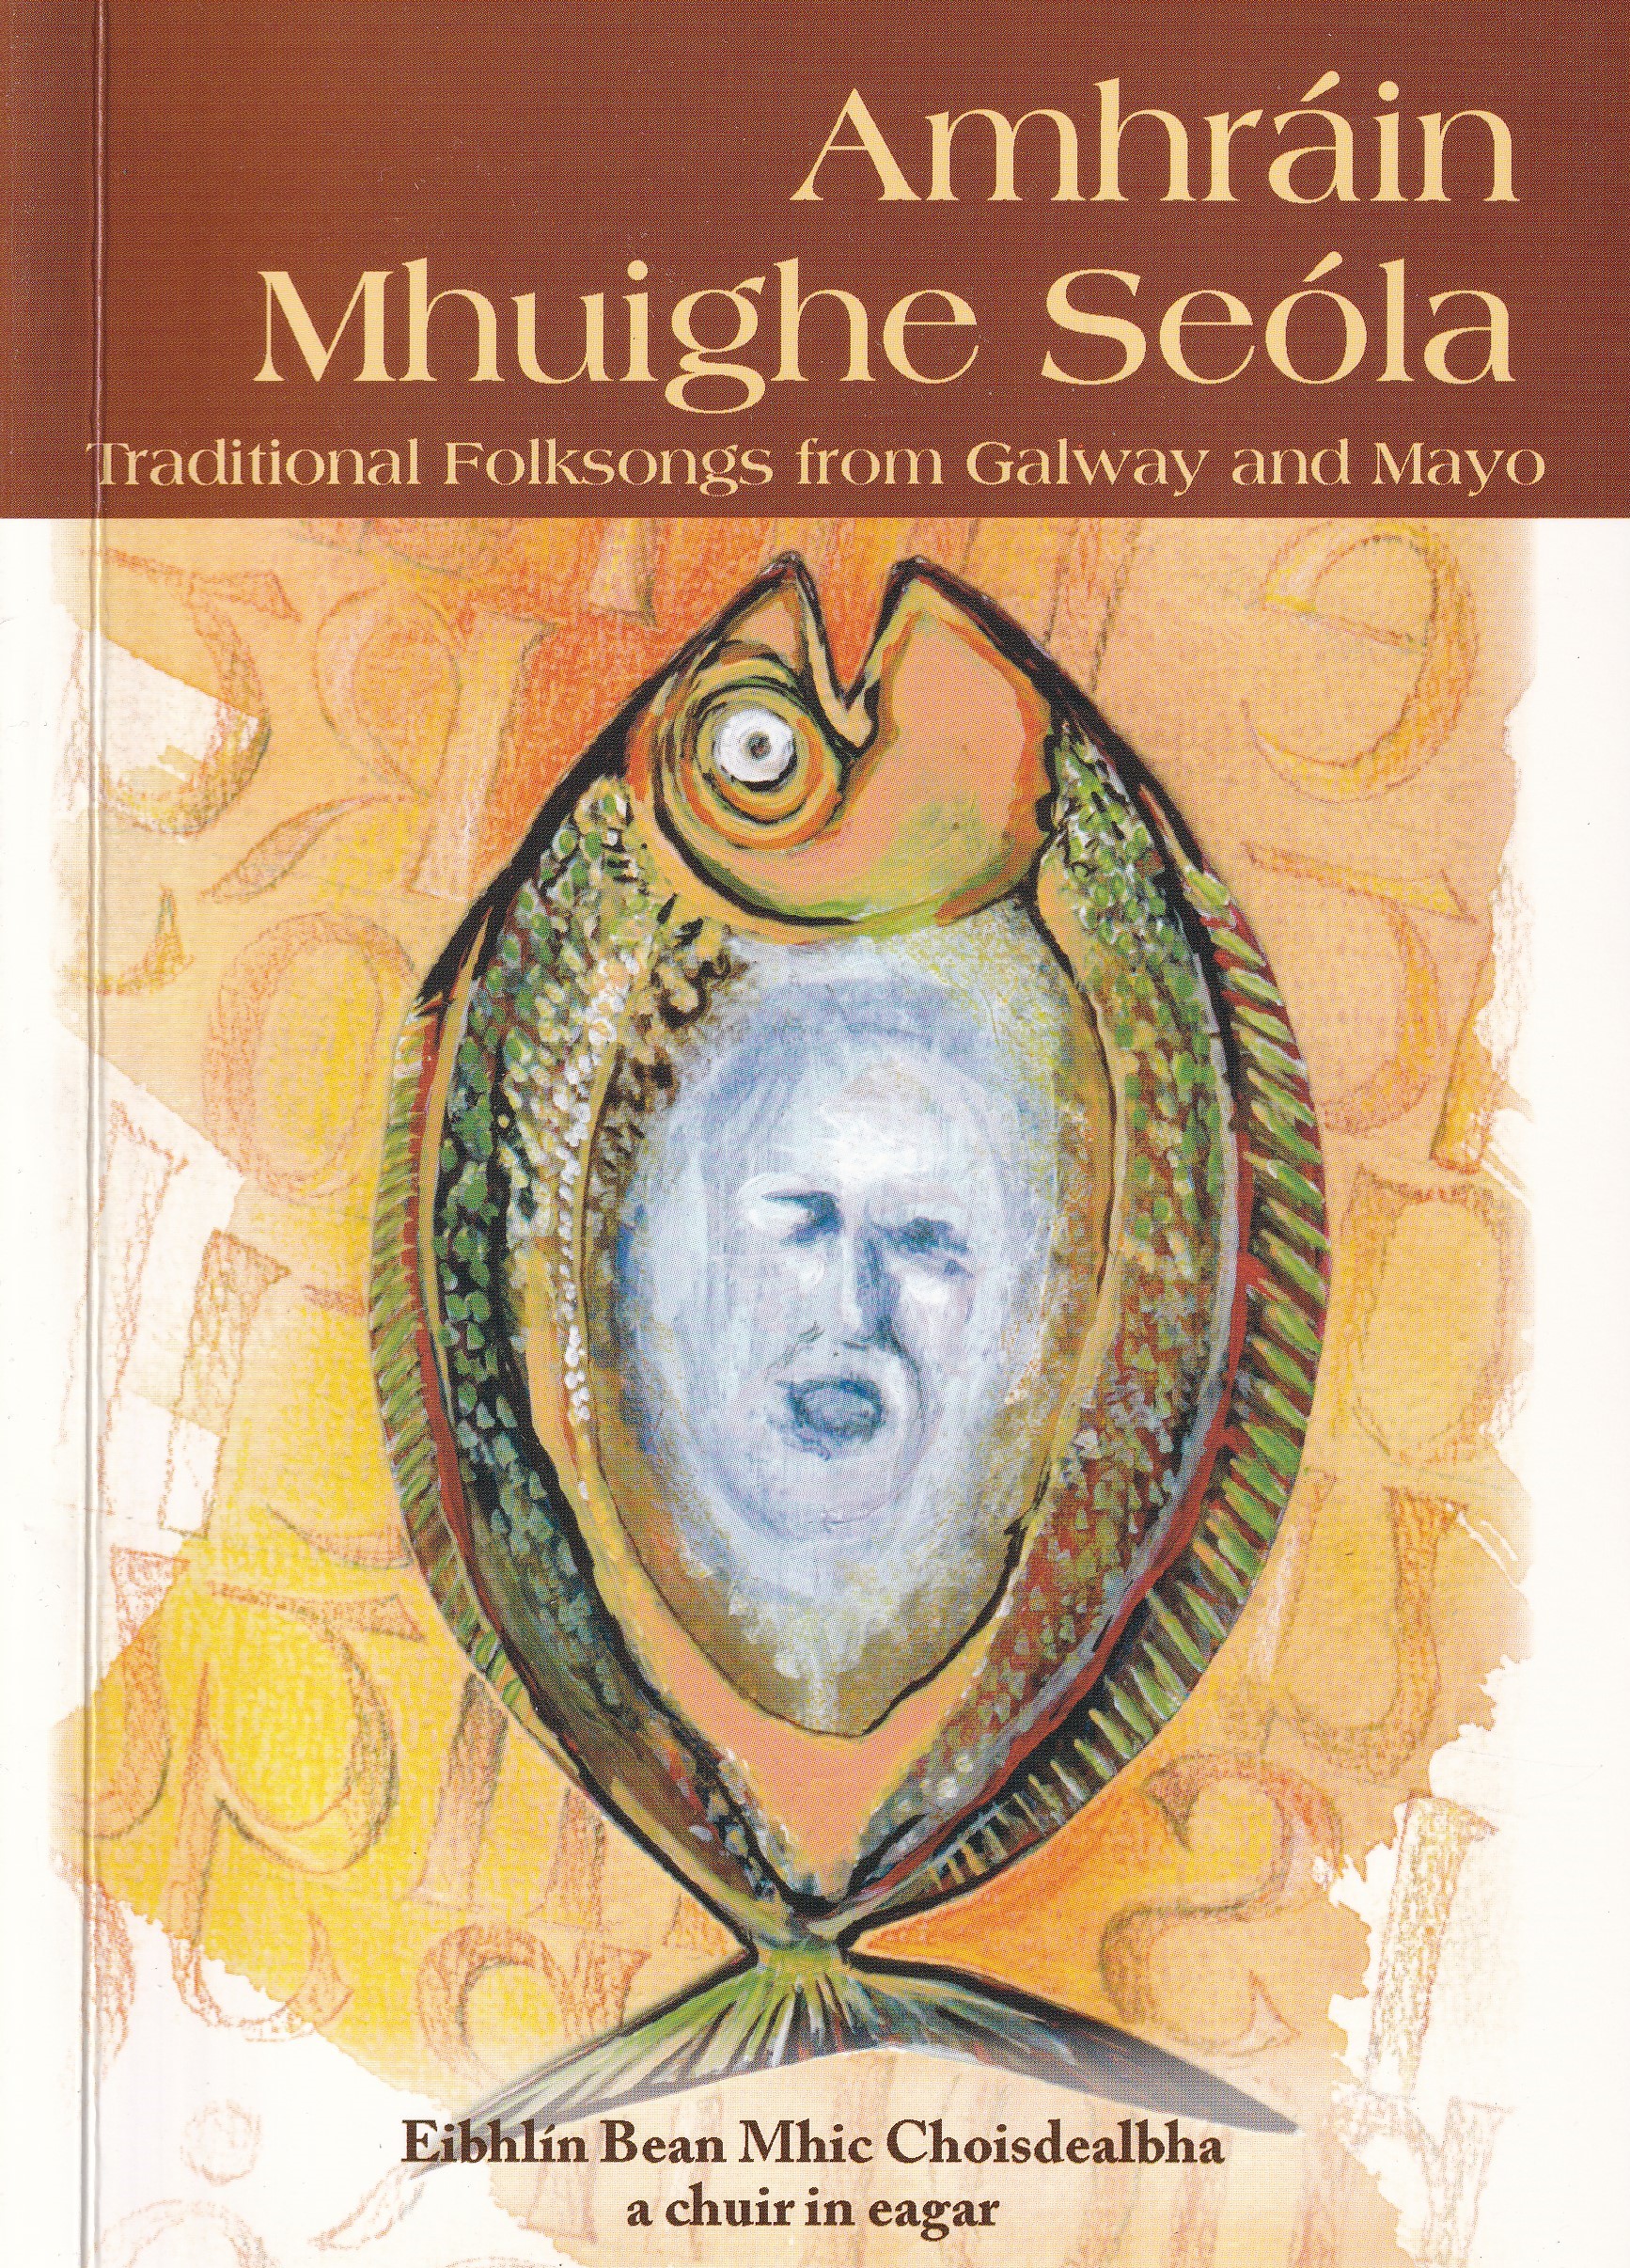 Amhráin Mhuighe Seóla: Traditional Folksongs from Galway and Mayo by Eibhlín Bea Mhic Choisdealbha (ed.)